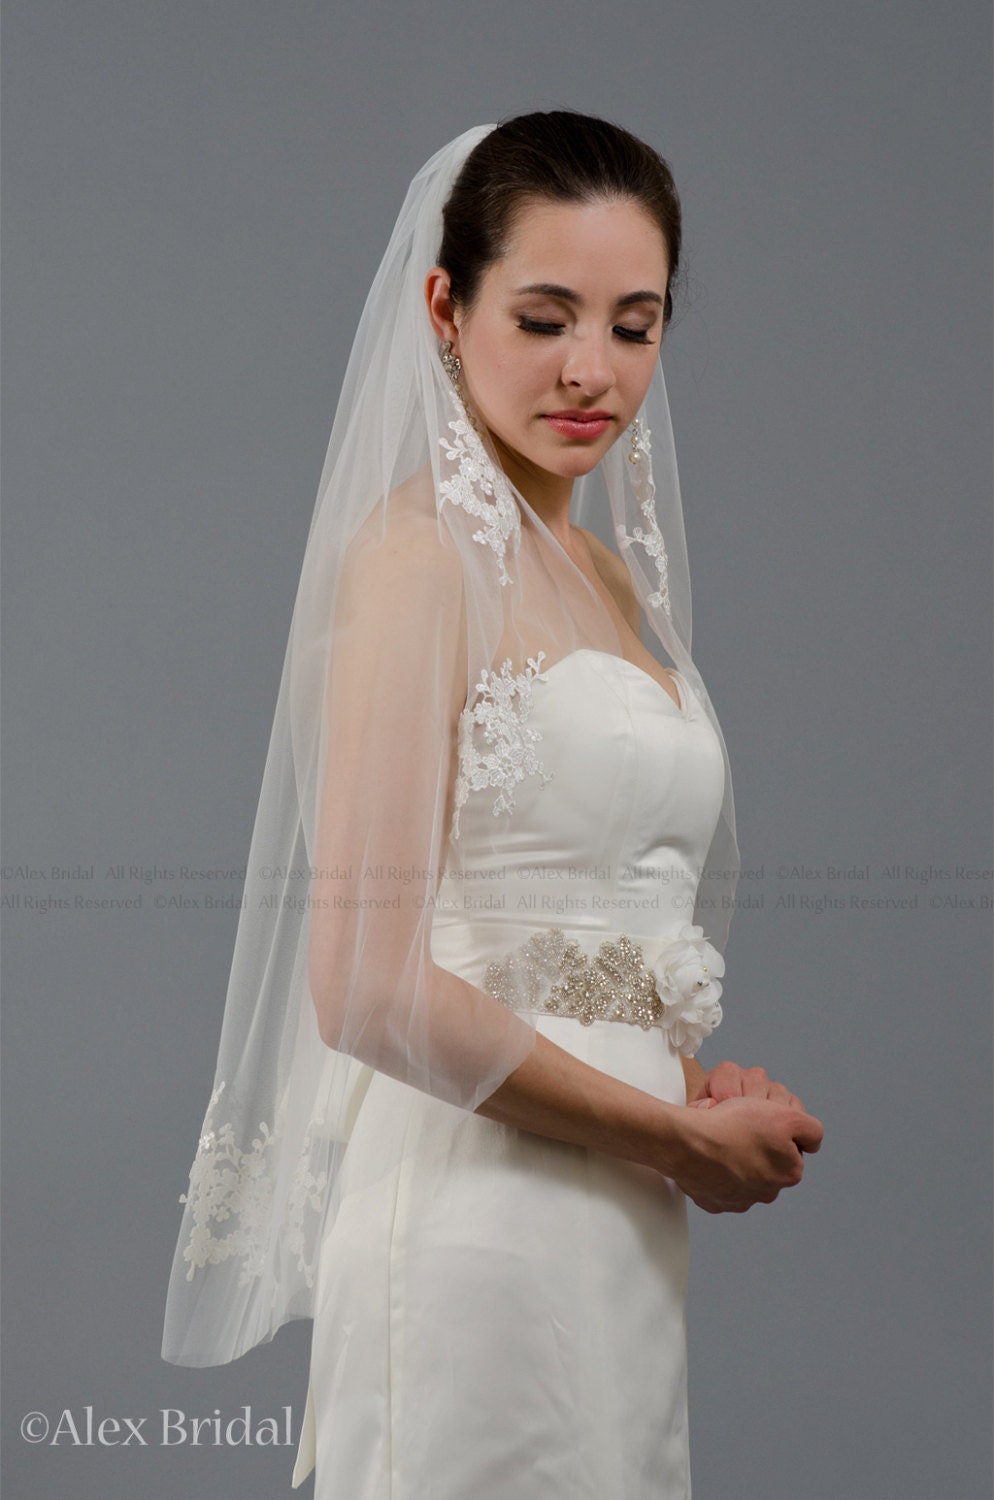 mantilla veil, bridal veil, wedding veil, ivory veil, lace veil, alencon lace, wedding veil ivory, wedding veil lace, elbow veil V046